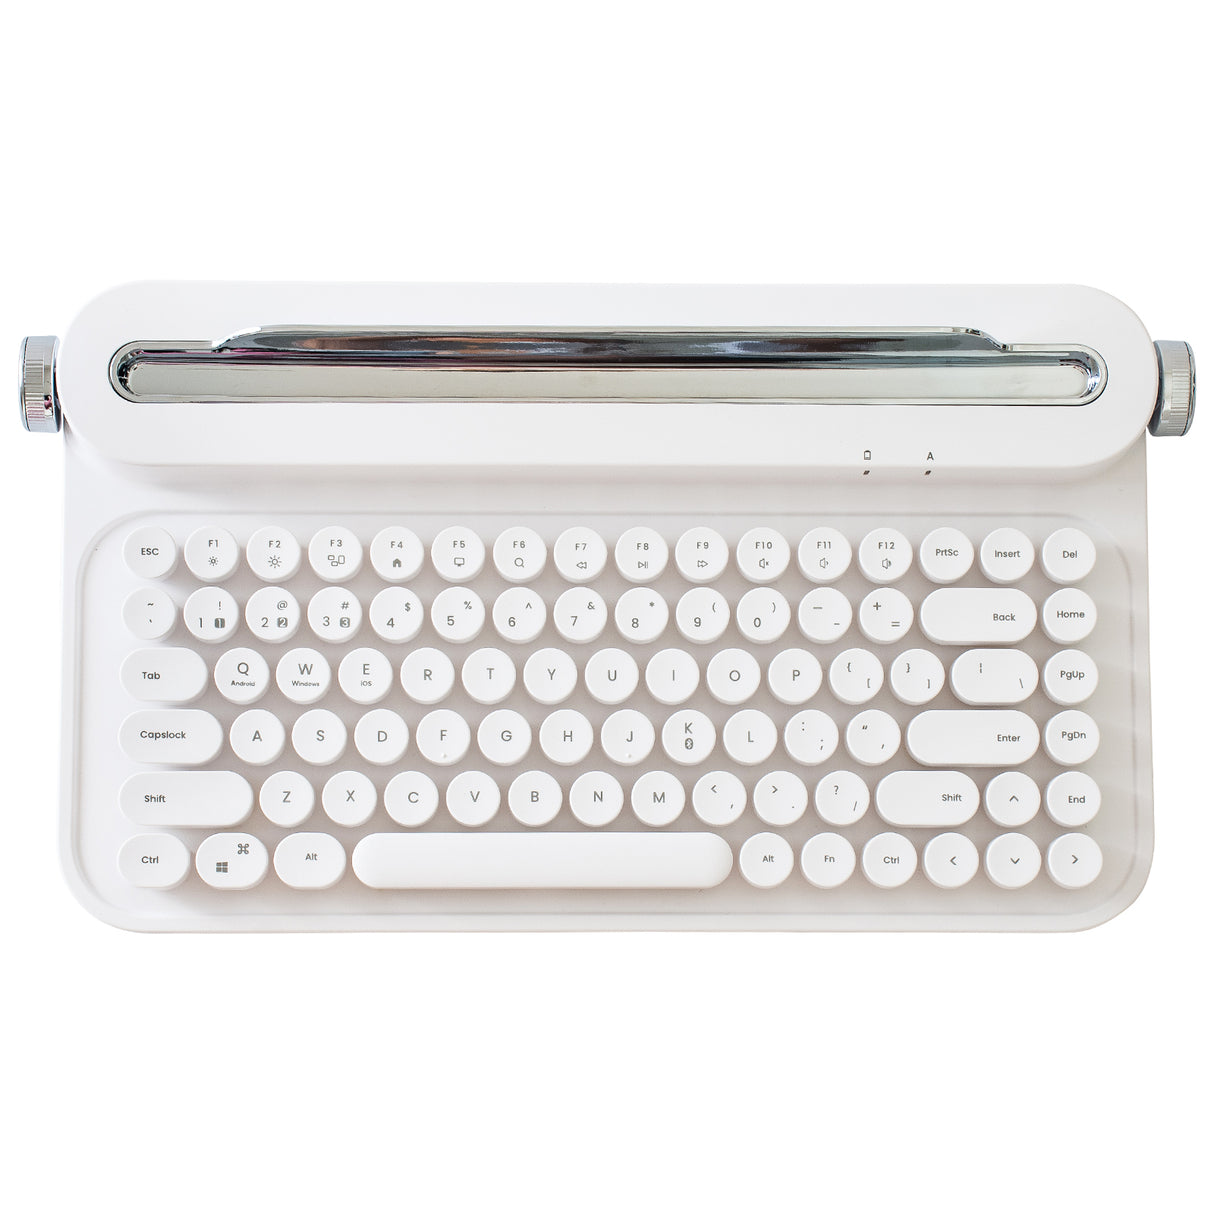 YUNZII ACTTO B305 Wireless Keyboard - White